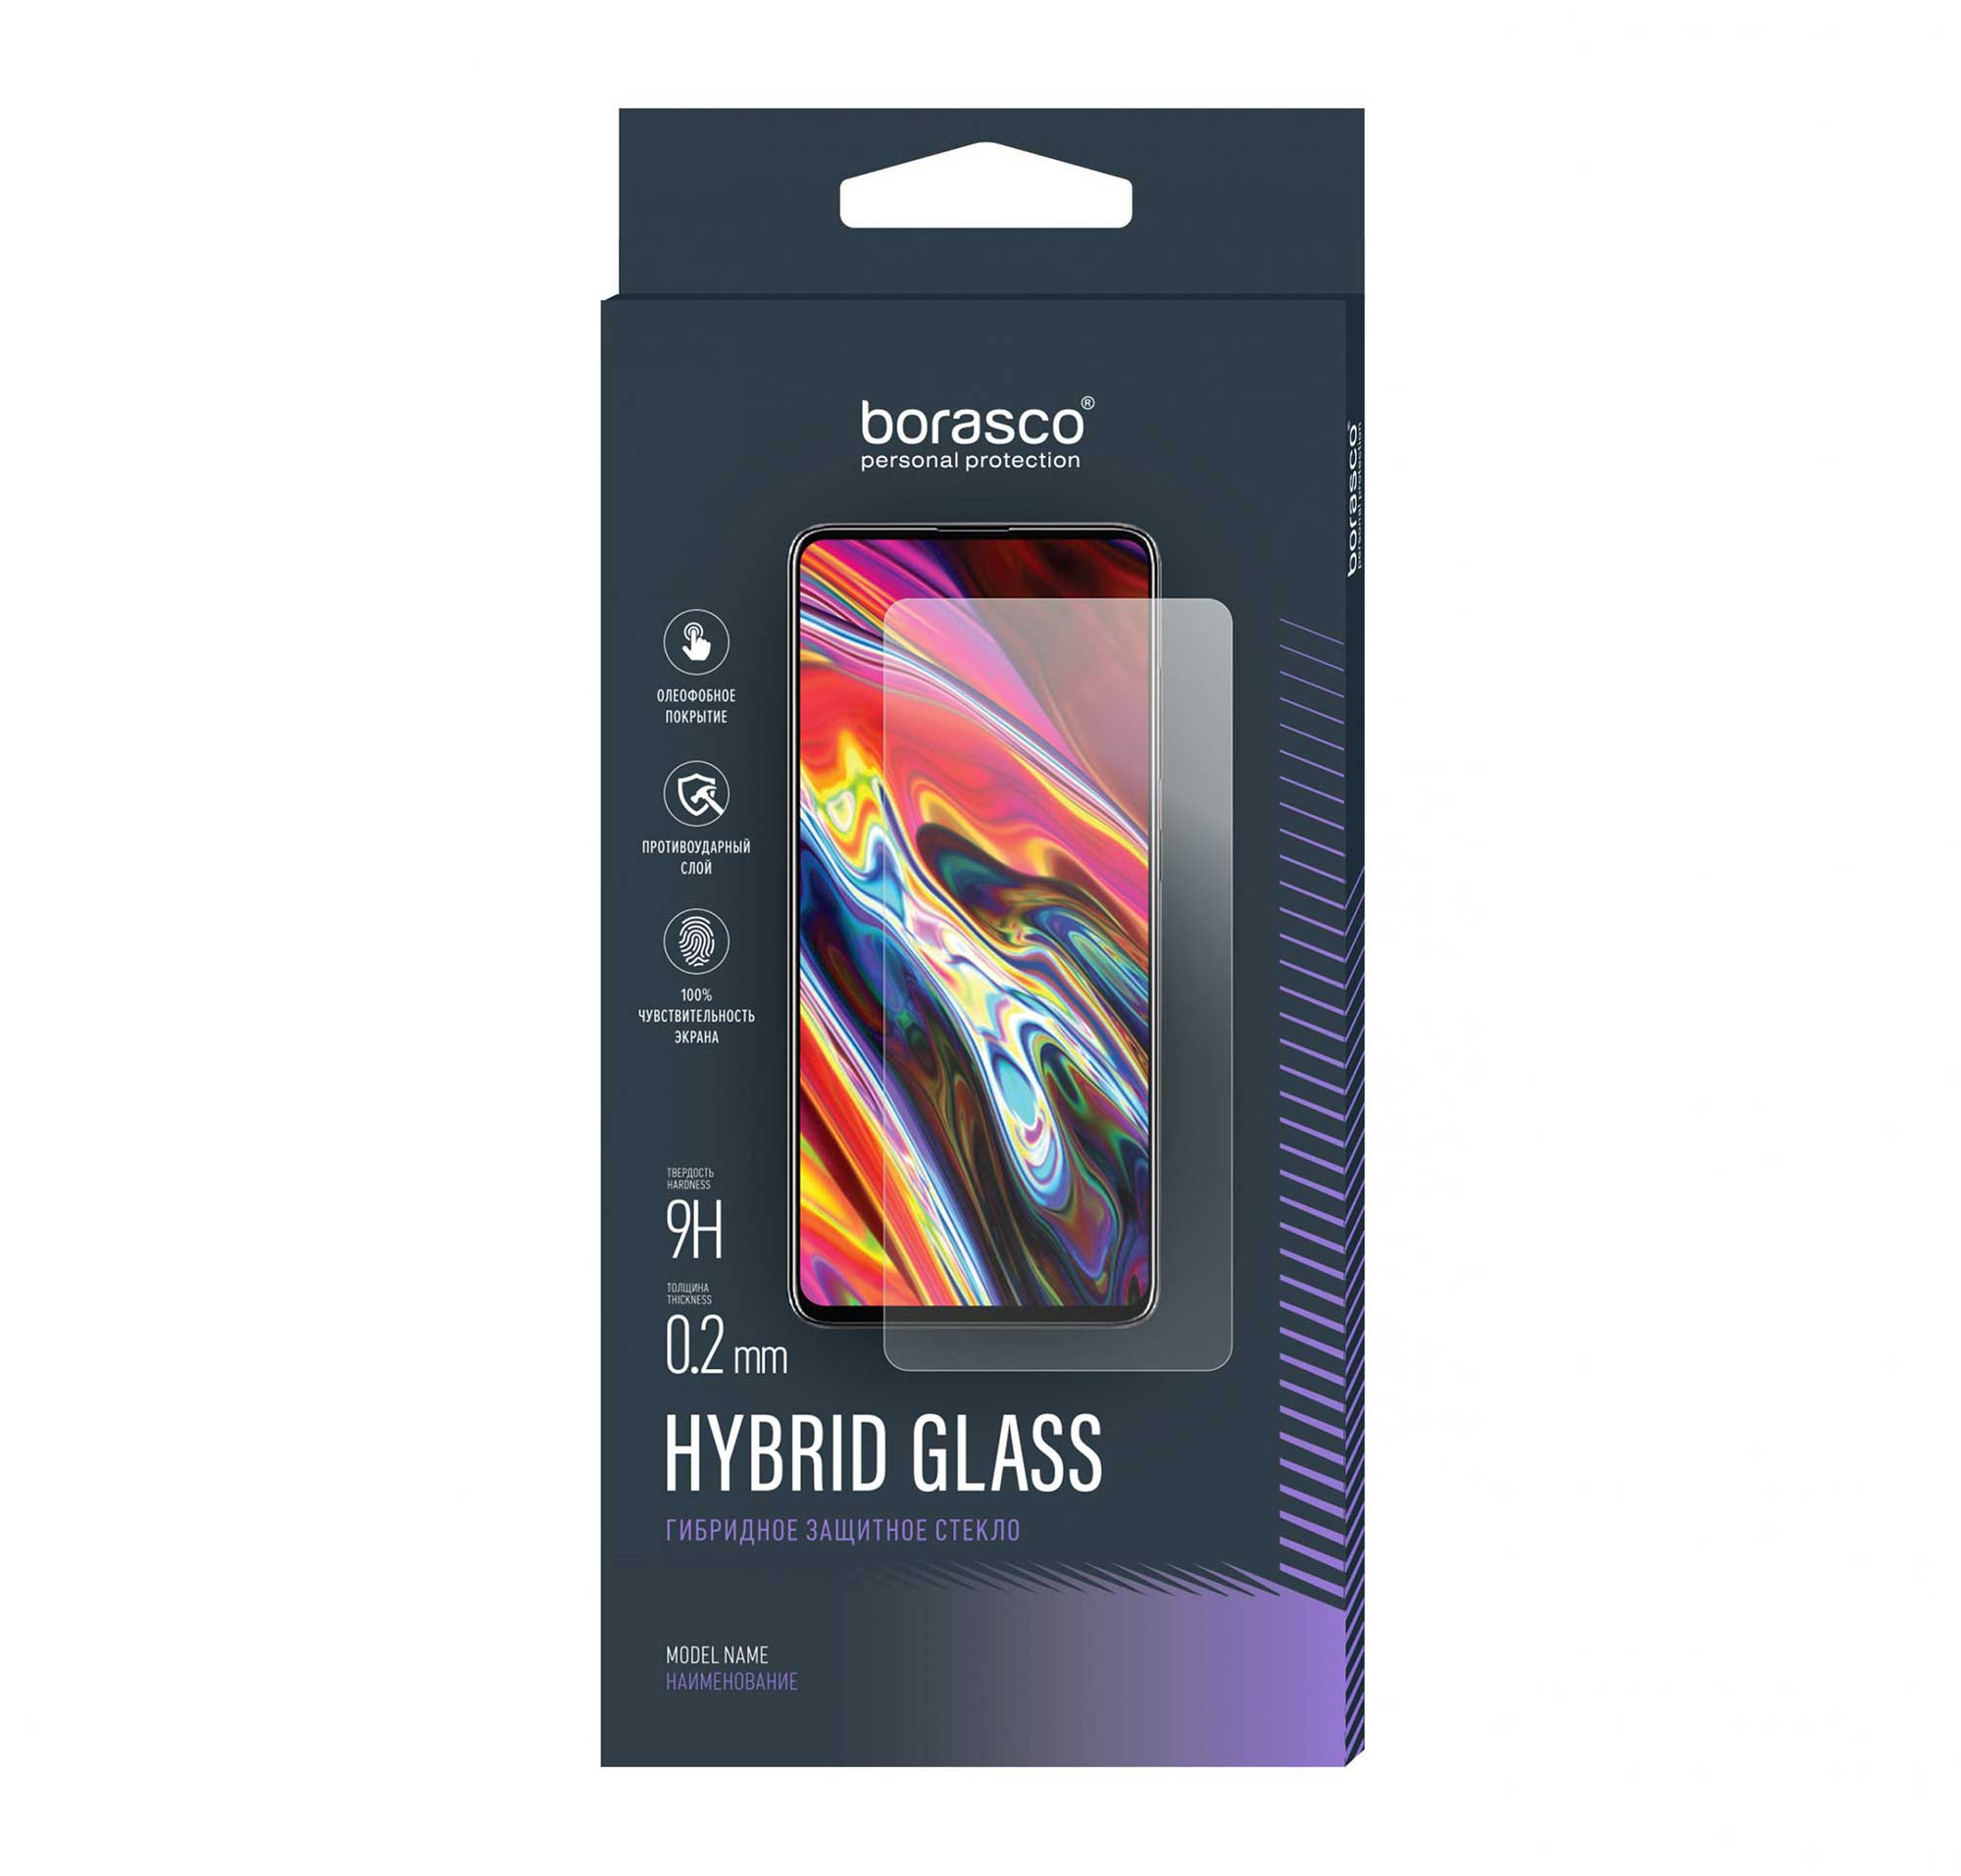 Защитное стекло BoraSCO Hybrid Glass для BQ 6630L MAGIC L пленка защитная гидрогелевая krutoff для bq 6630l magic l задняя сторона звездная ночь